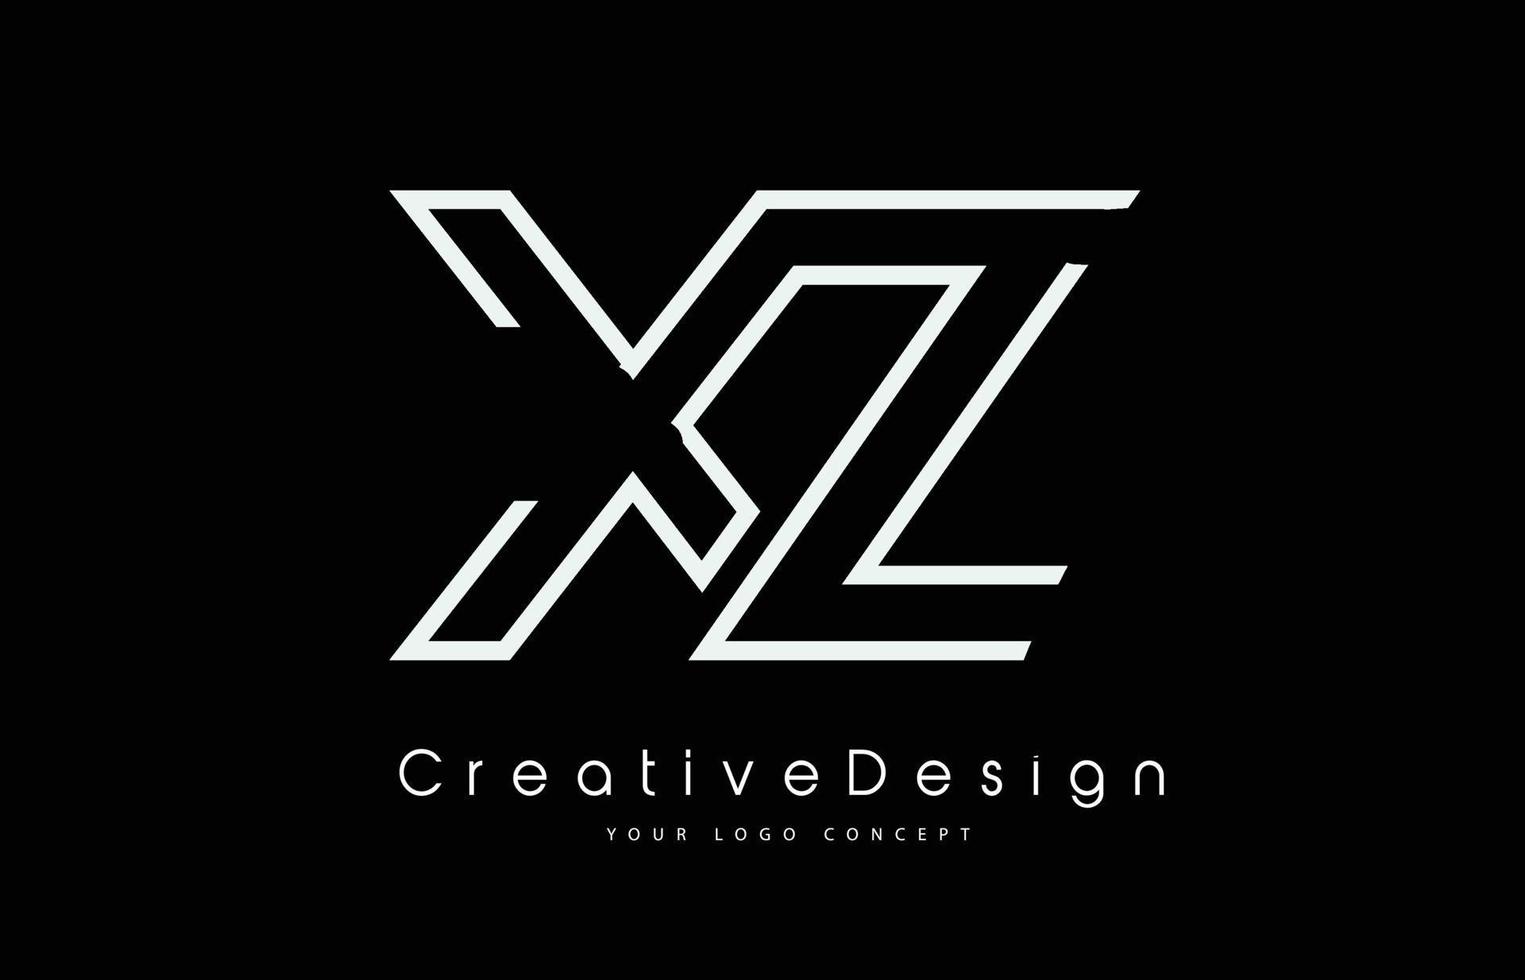 Diseño del logotipo de la letra xz xz en colores blancos. vector